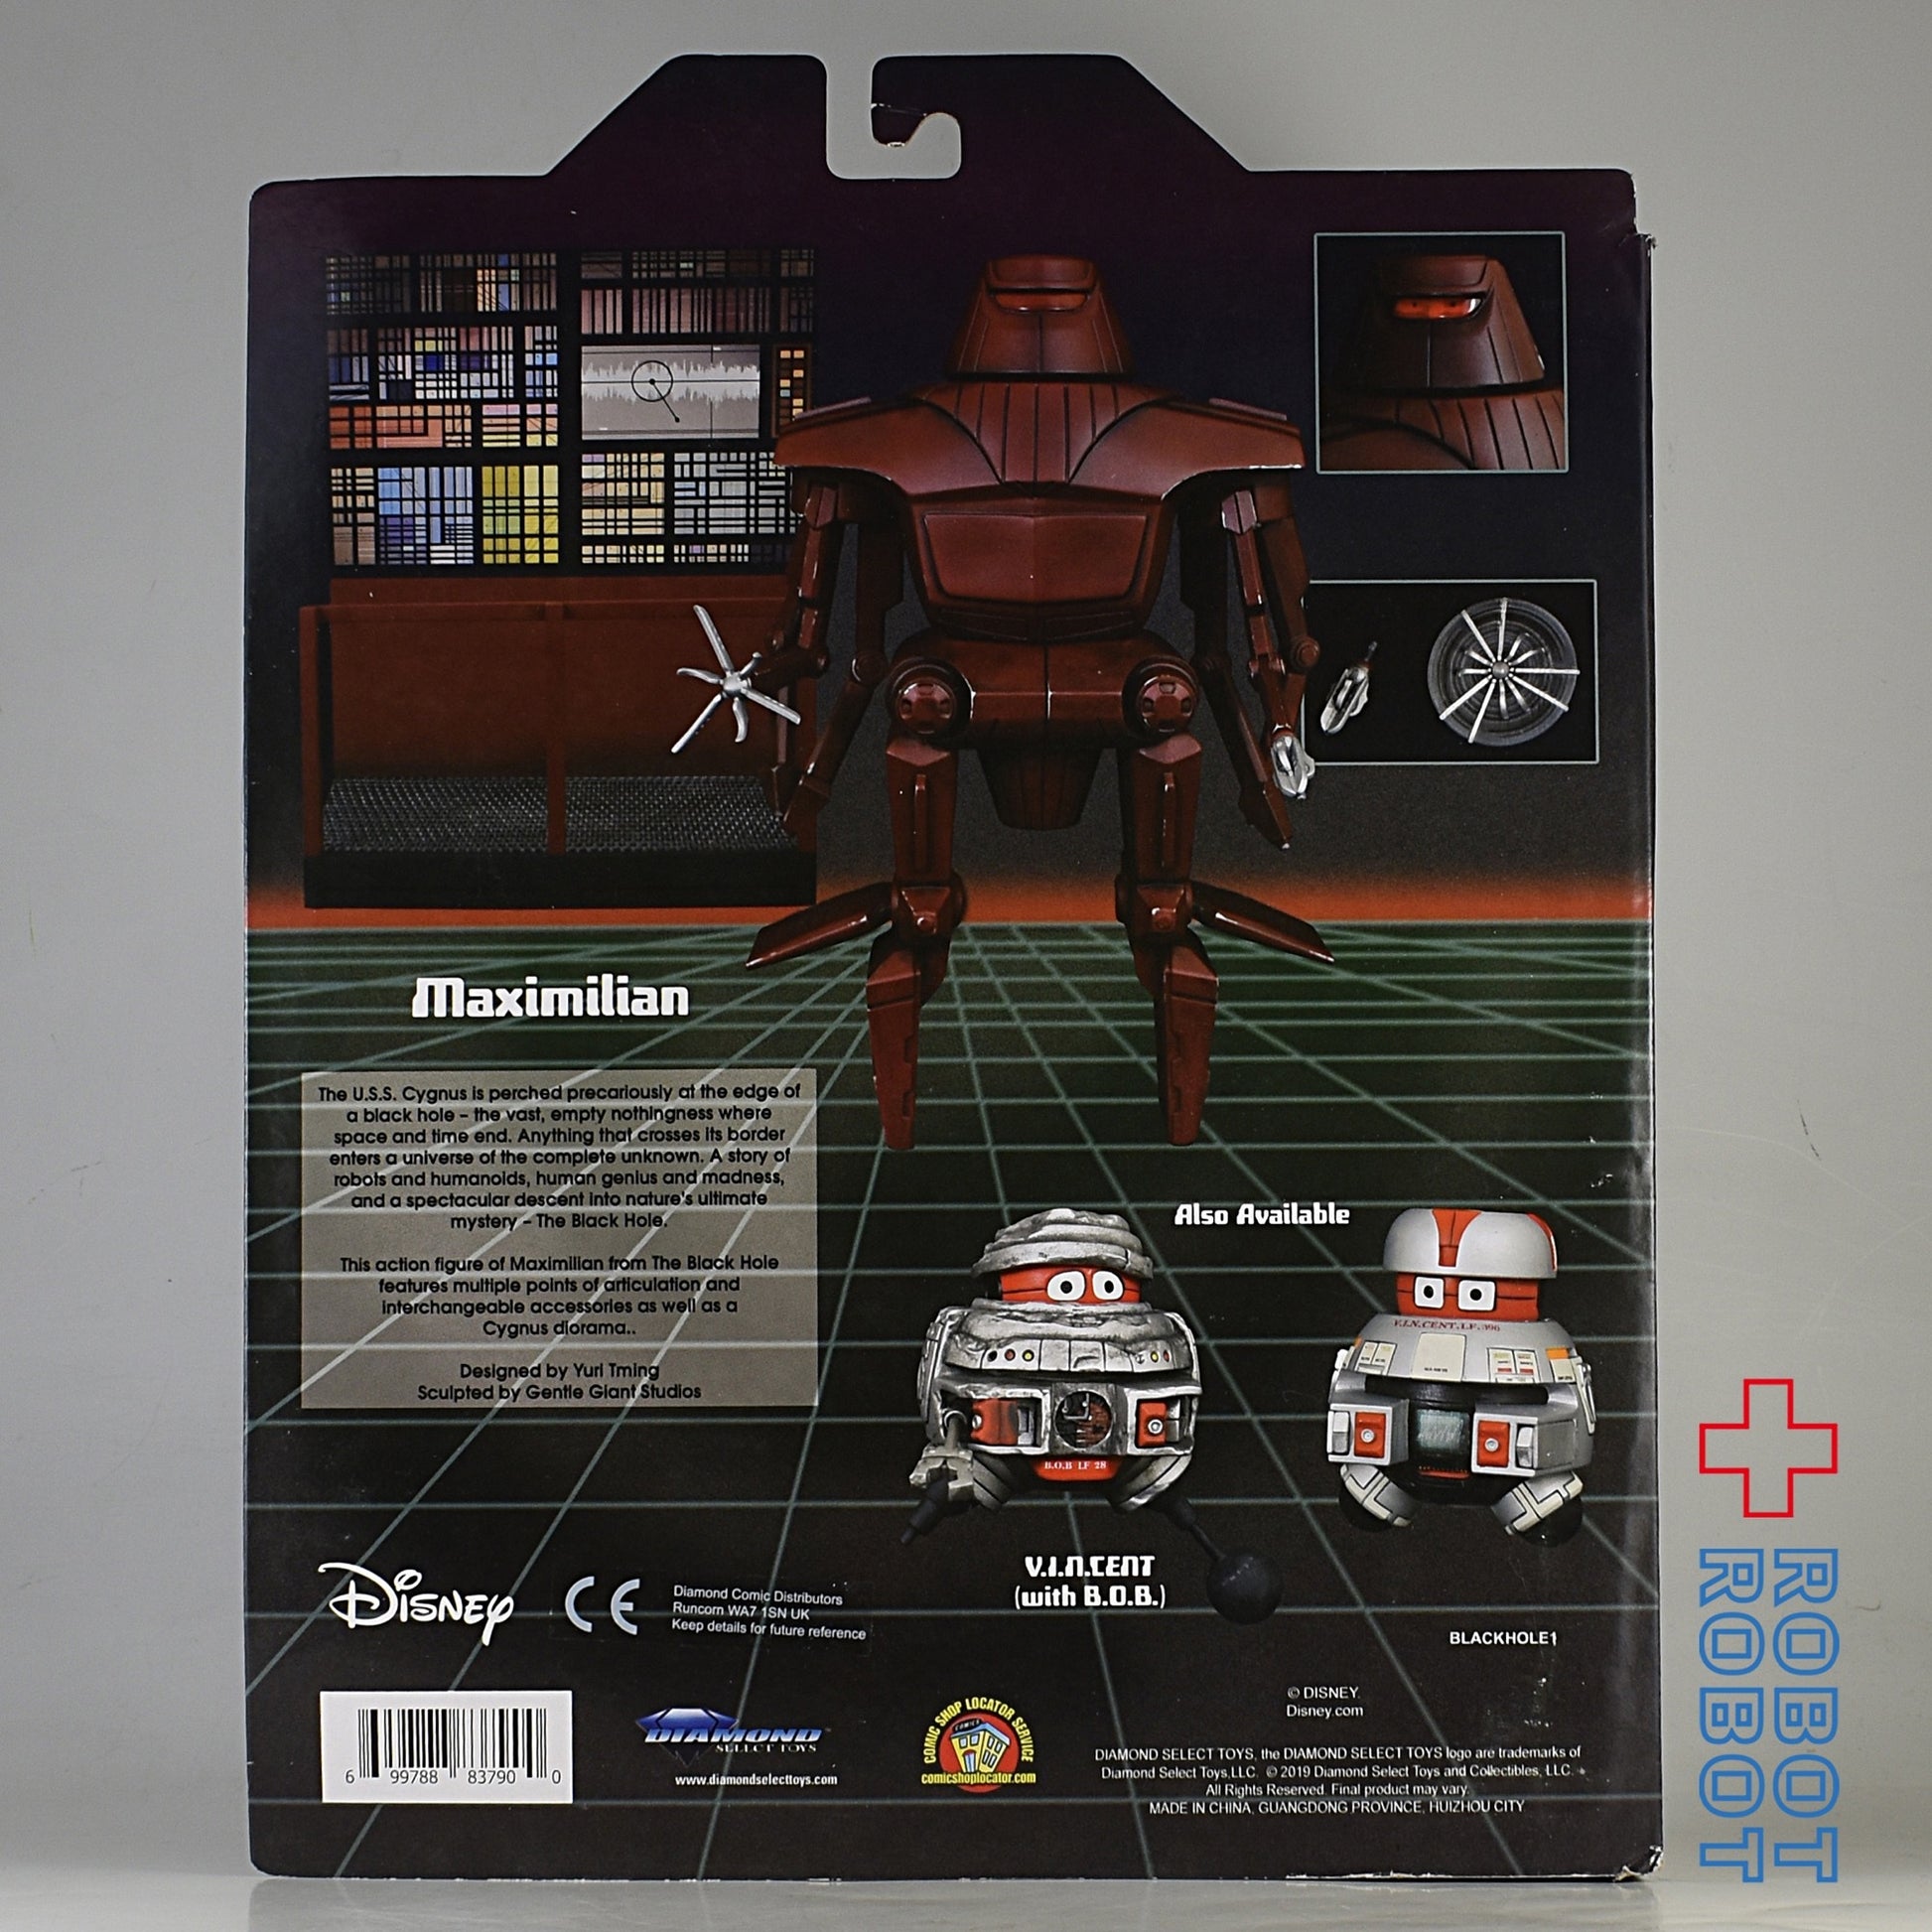 ディズニー セレクト クラシック シリーズ1 ブラックホール マクシミリアン フィギュア 未開封diamond Select Disney Robotrobot